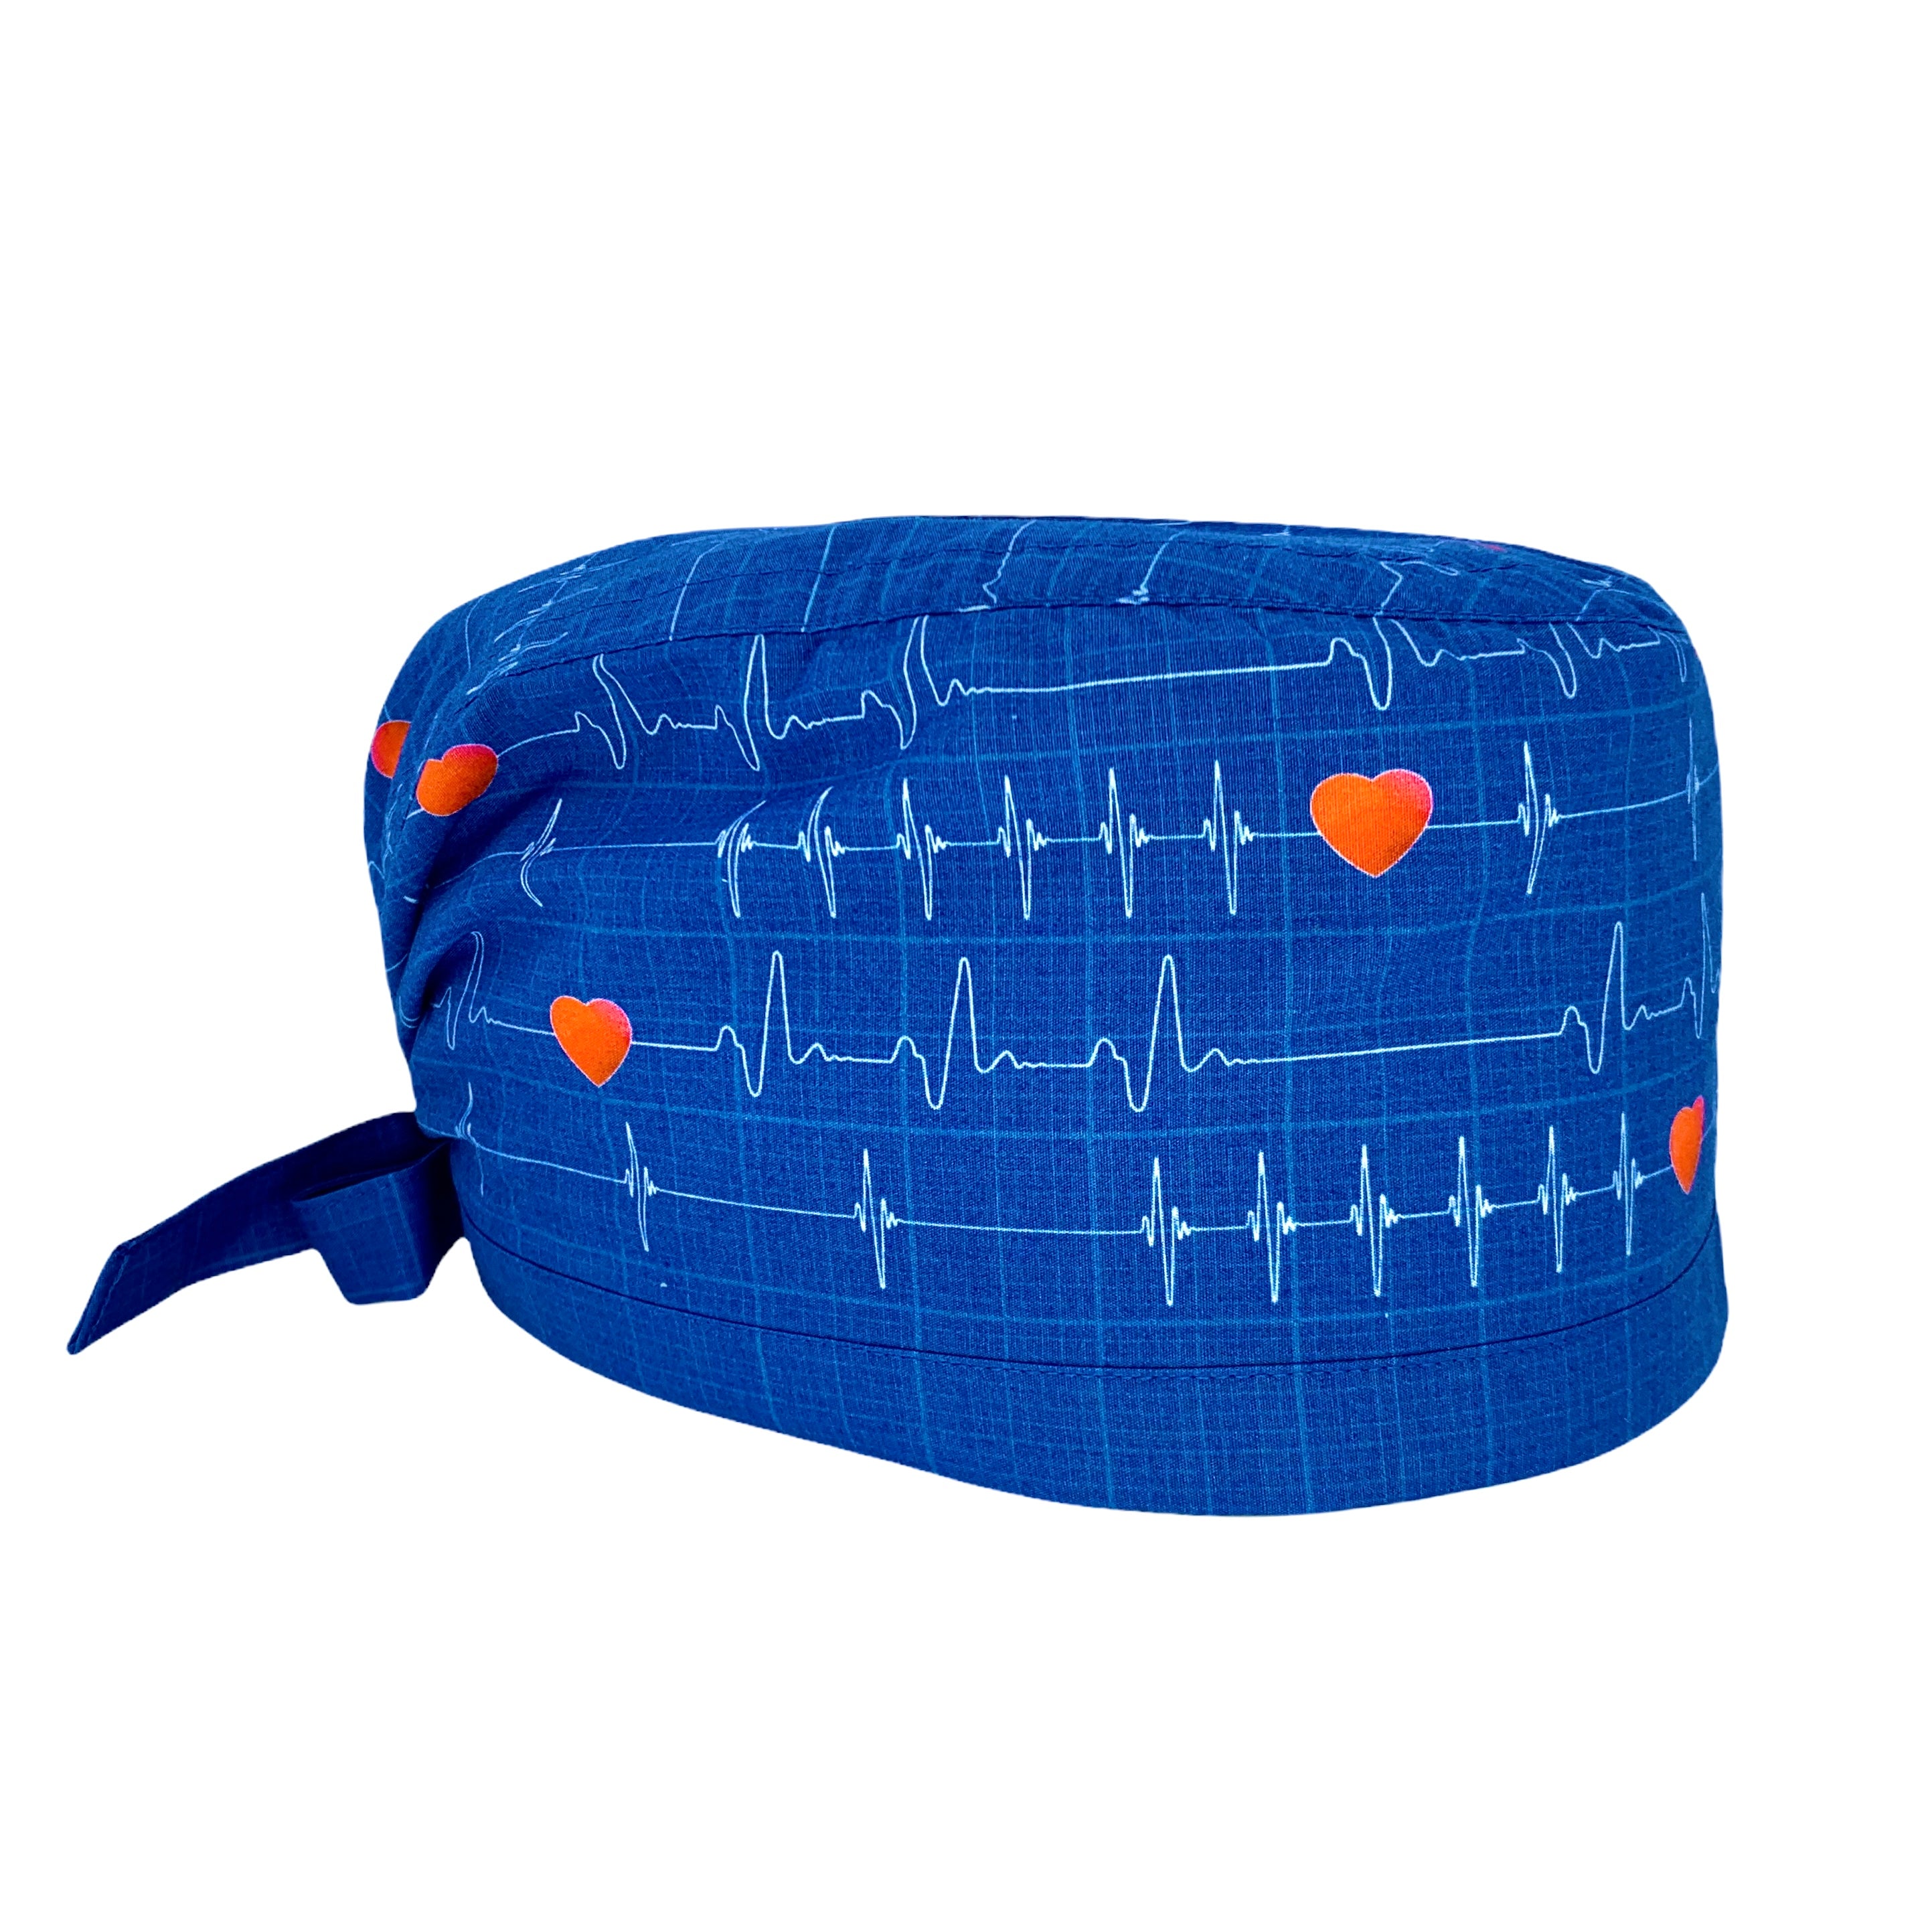 Cuffietta con tracciati ECG su base blu e piccoli cuori rossi.